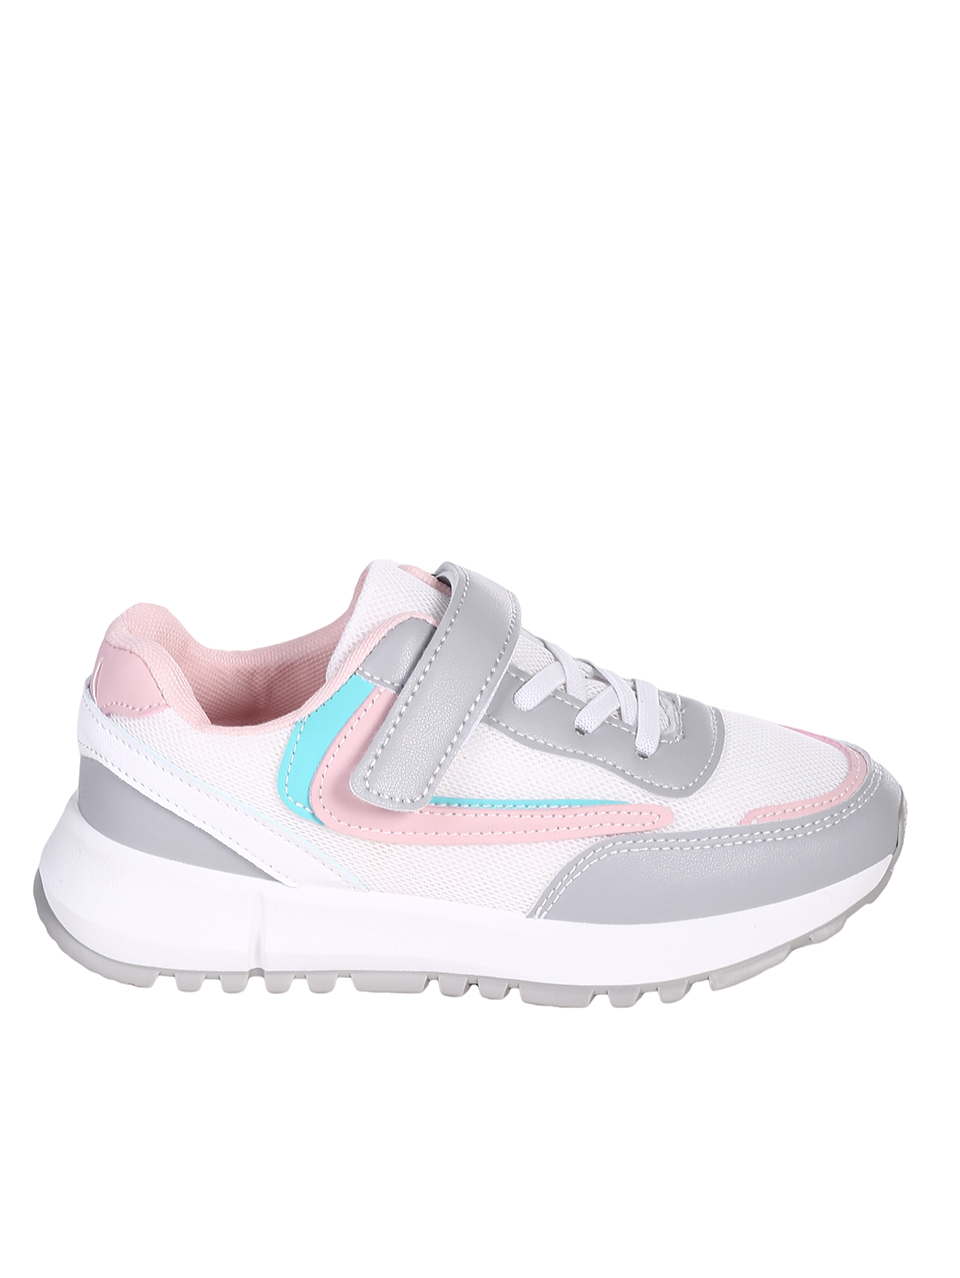 Ежедневни детски комфортни обувки 18U-23236 white/pink/grey